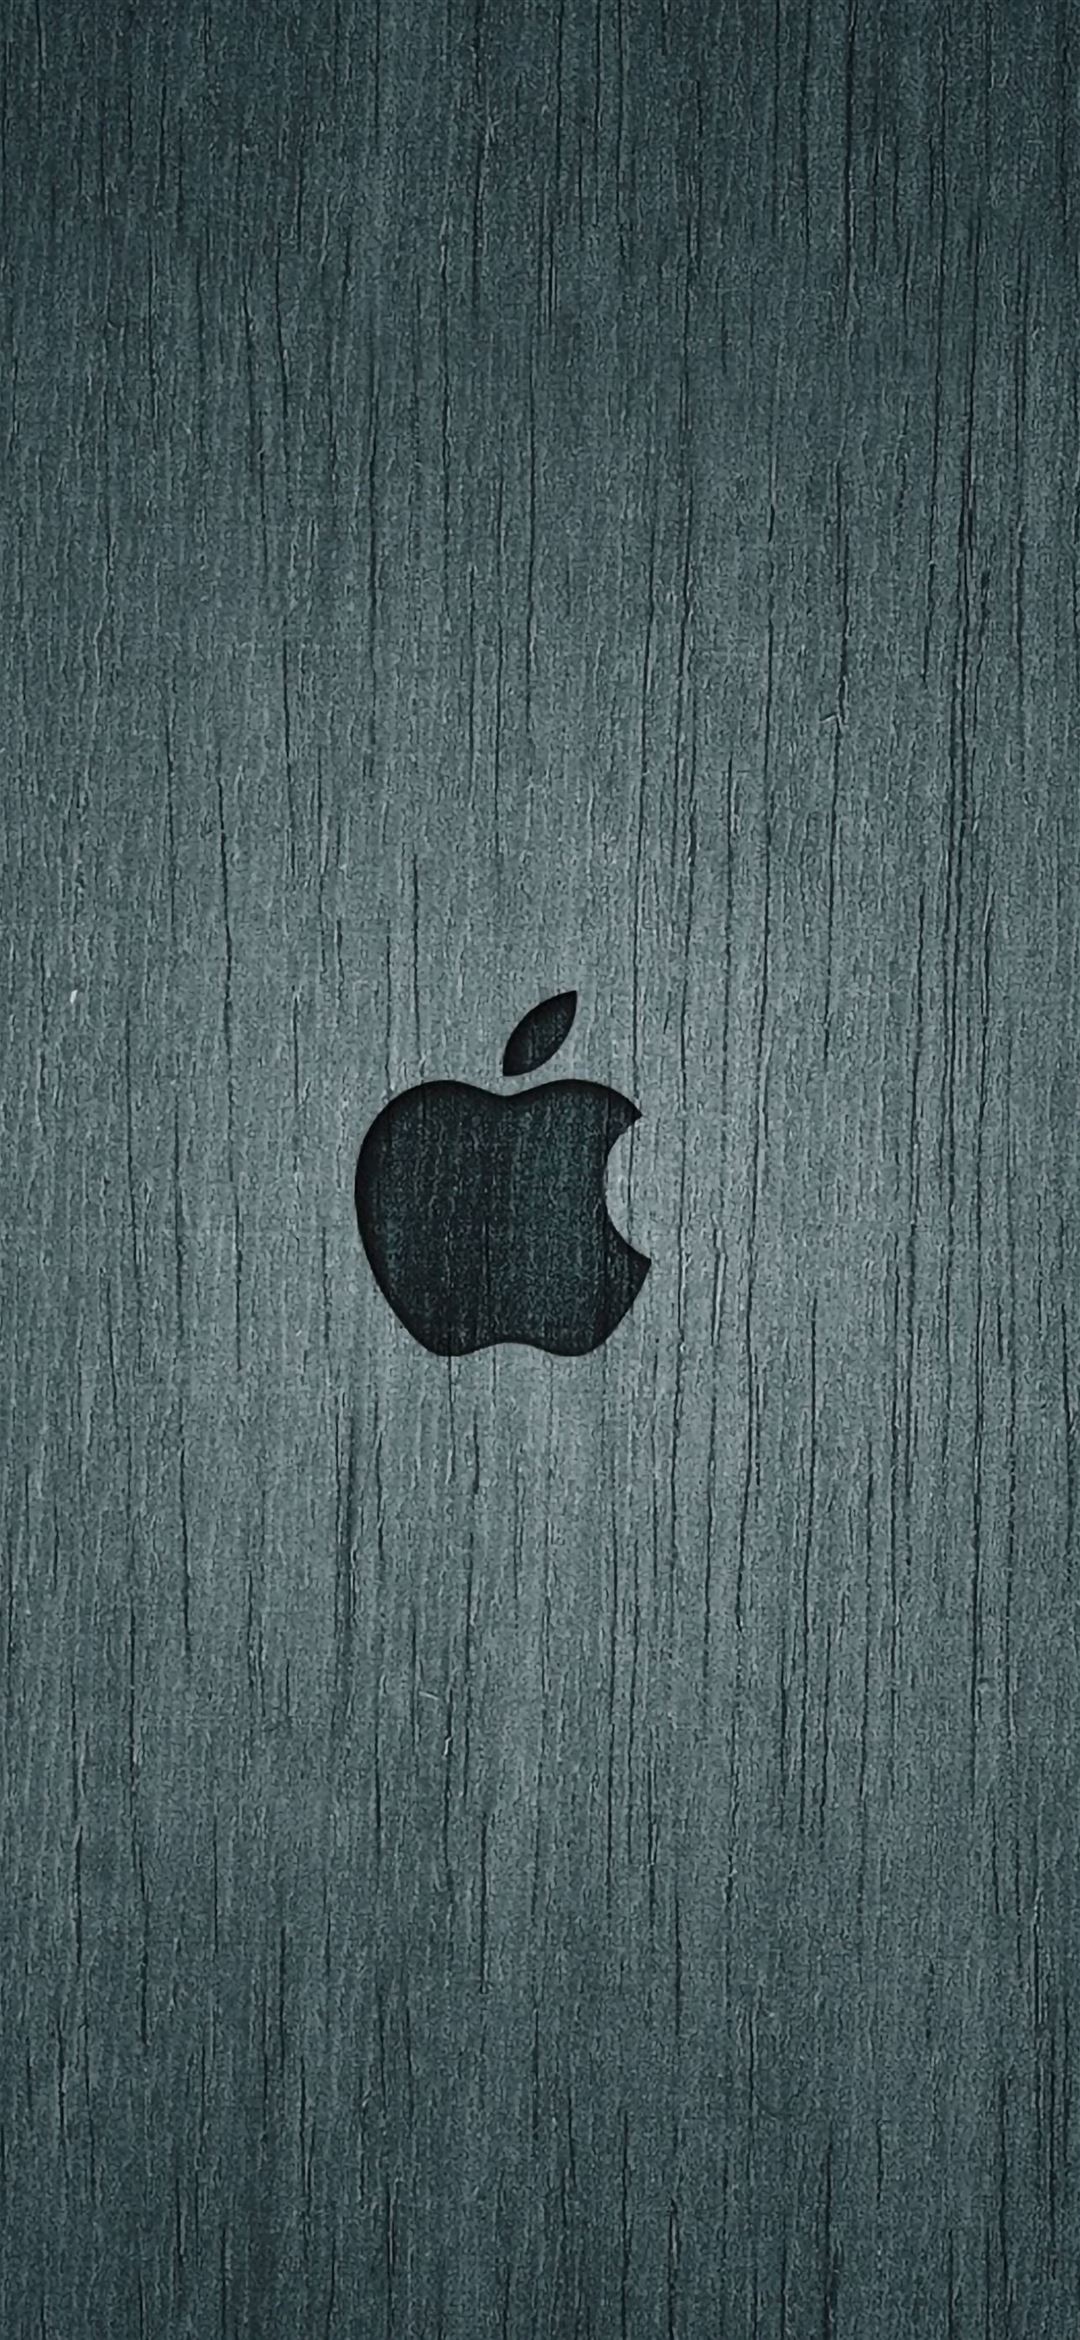 Một lần nữa, hãy trở thành người sở hữu chiếc điện thoại đầy phong cách với hình nền Dark Apple Wood. Hình nền thông qua sự pha trộn của một màu nâu rực rỡ và các họa tiết đẹp mắt sẽ khiến cho chiếc điện thoại của bạn trở nên độc đáo.